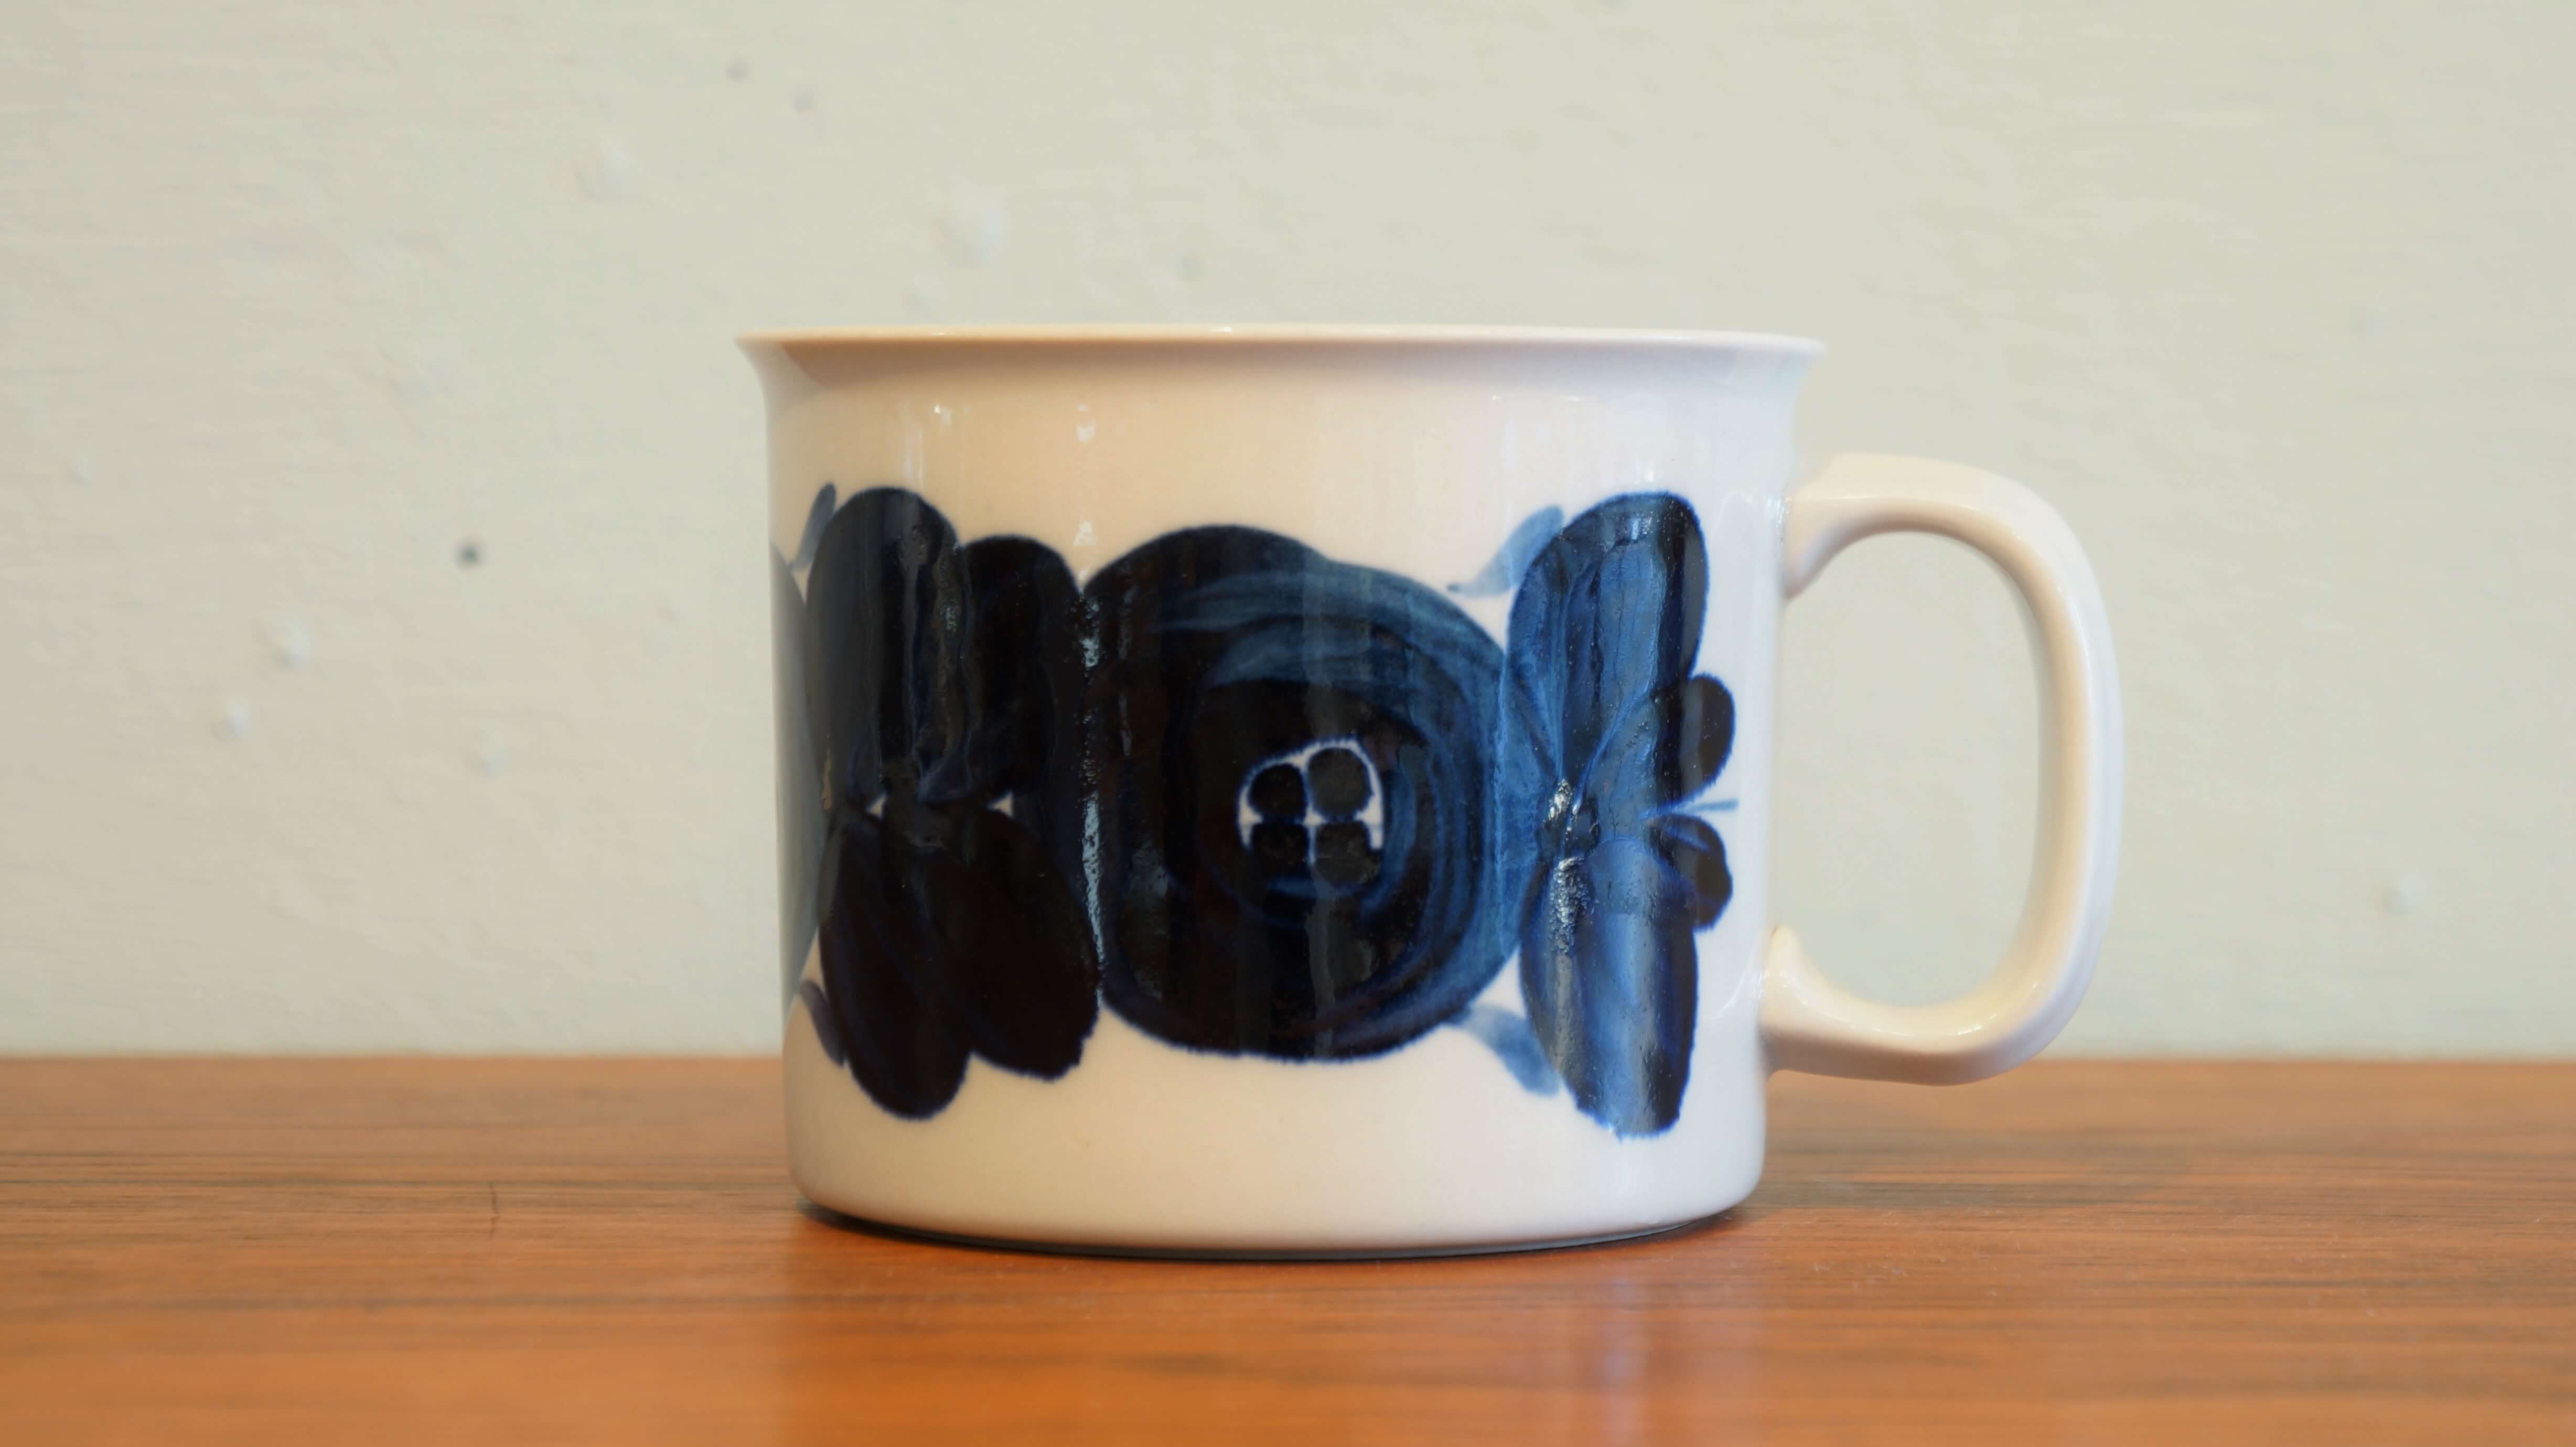 ARABIA "anemone" mug cup 360ml/アラビア "アネモネ" マグカップ 360ml